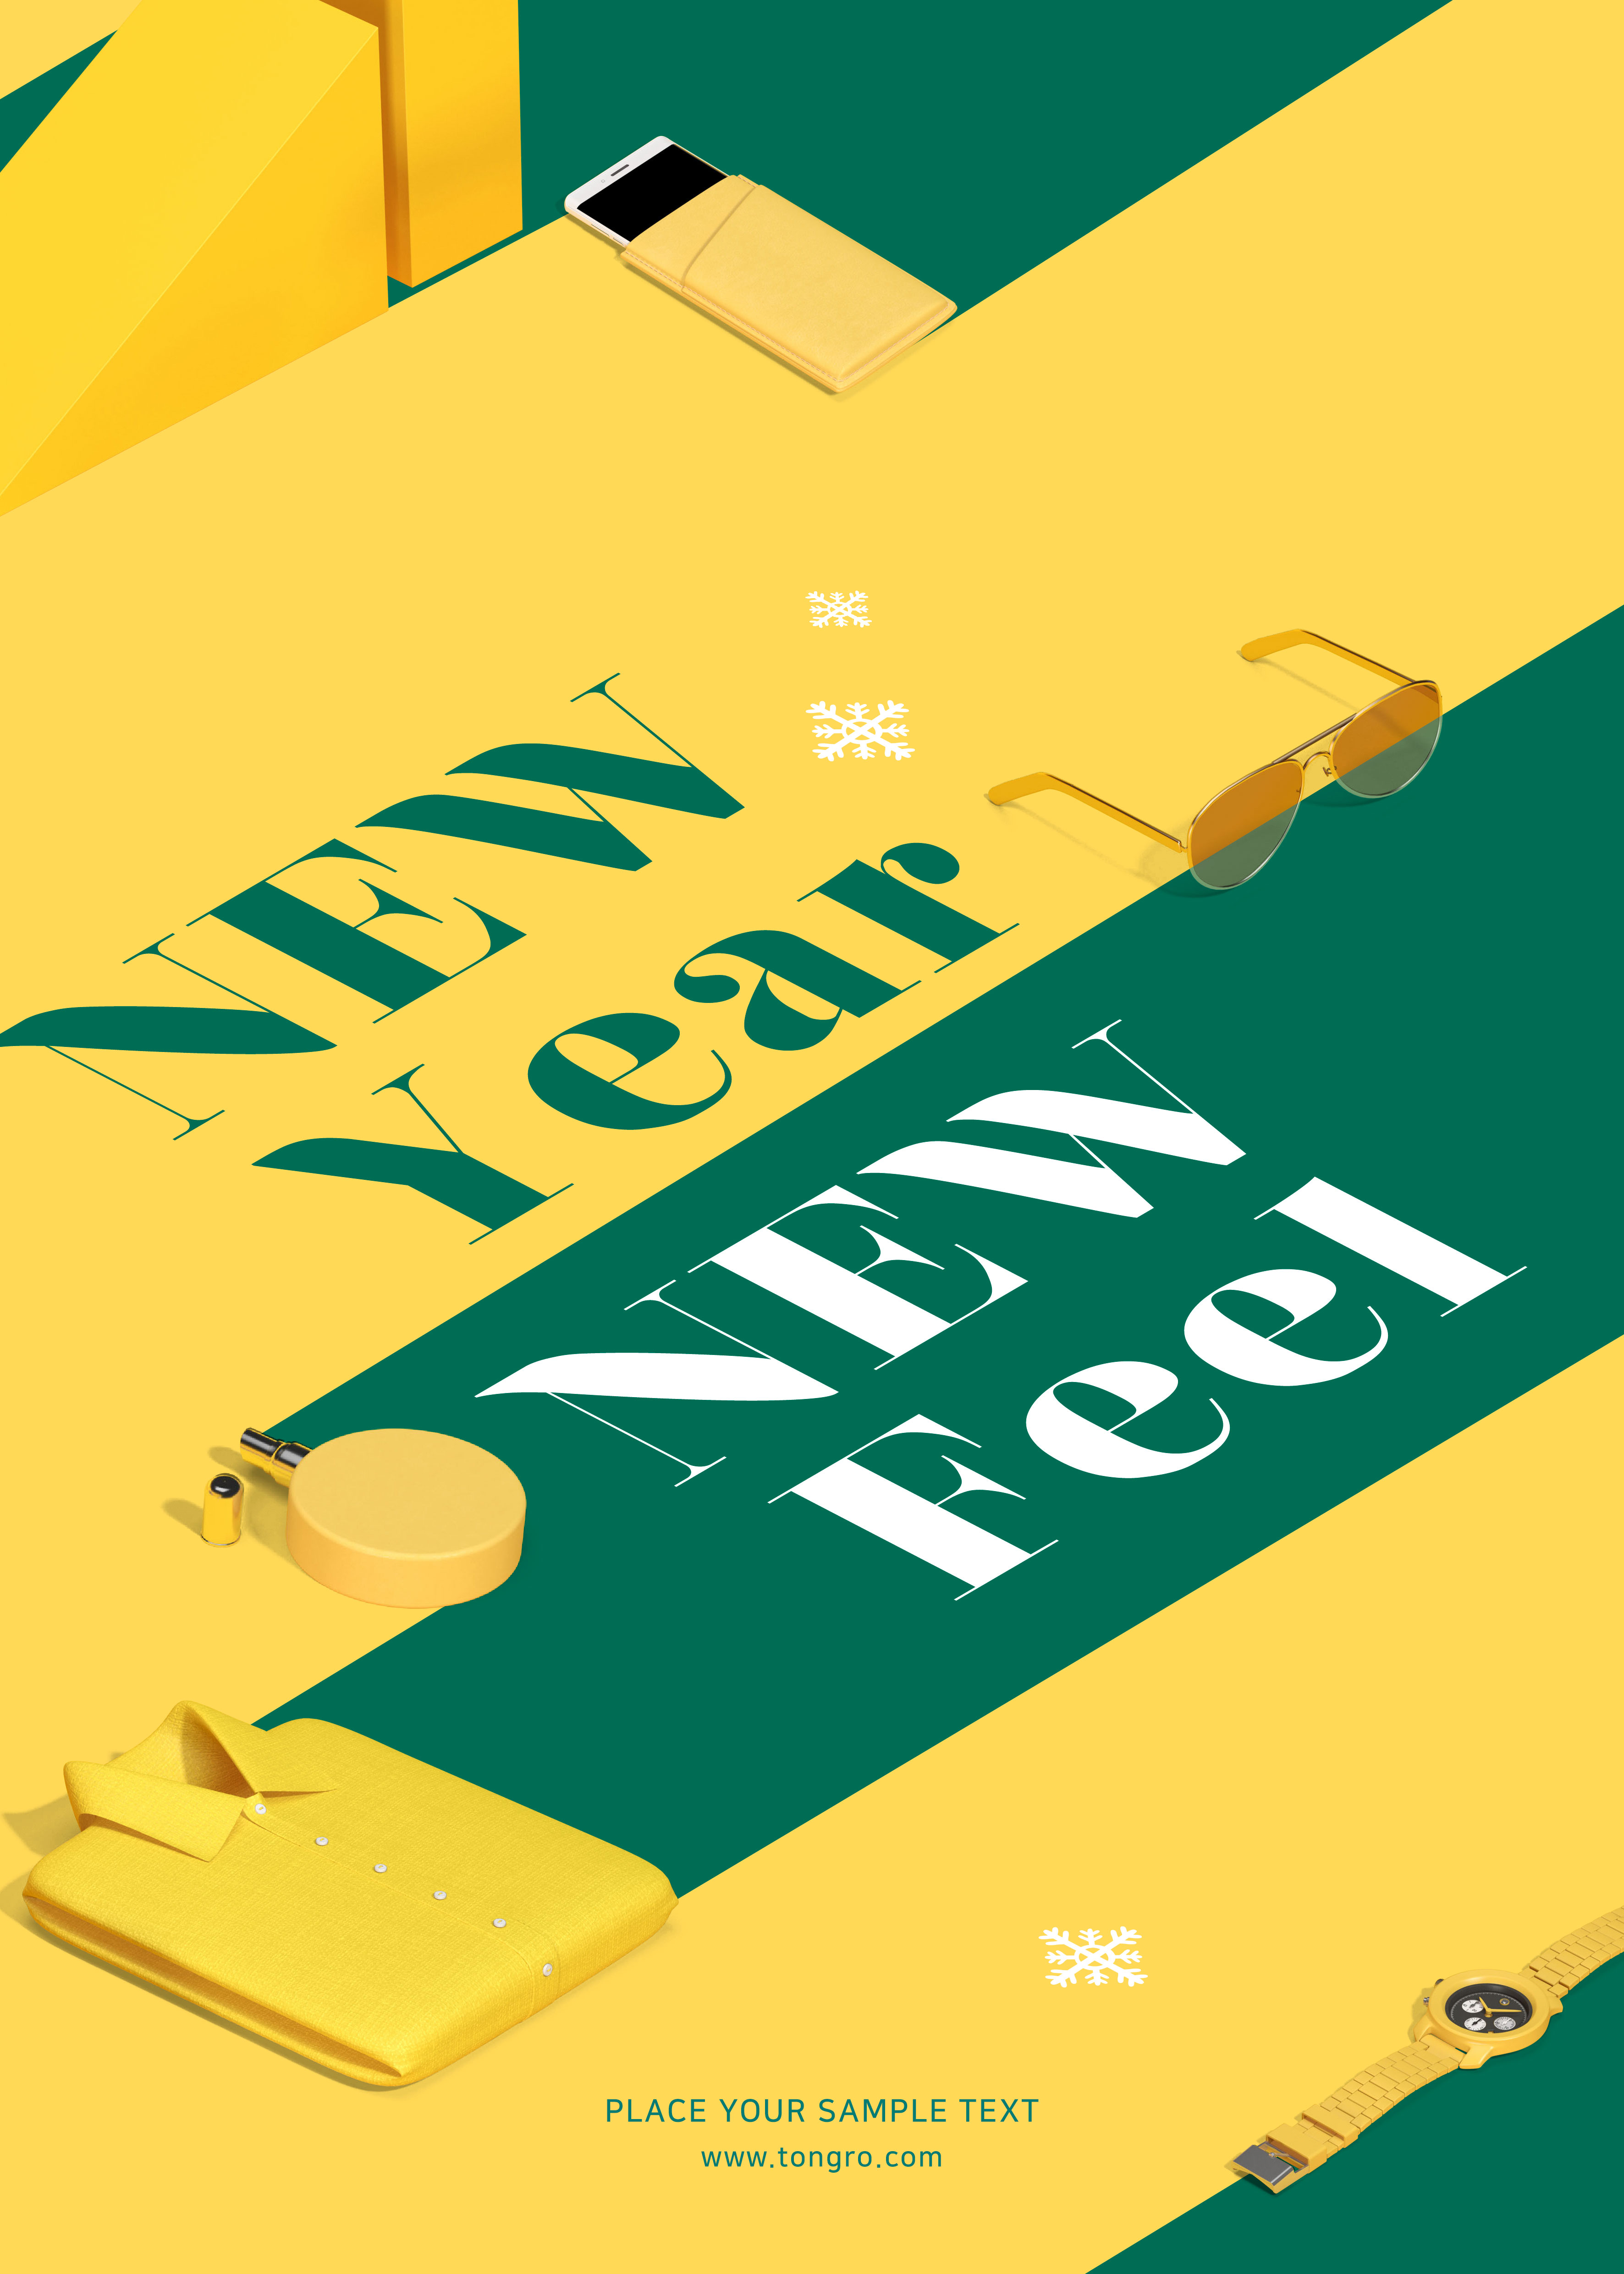 黄&绿混搭配色风格新年海波设计模板插图